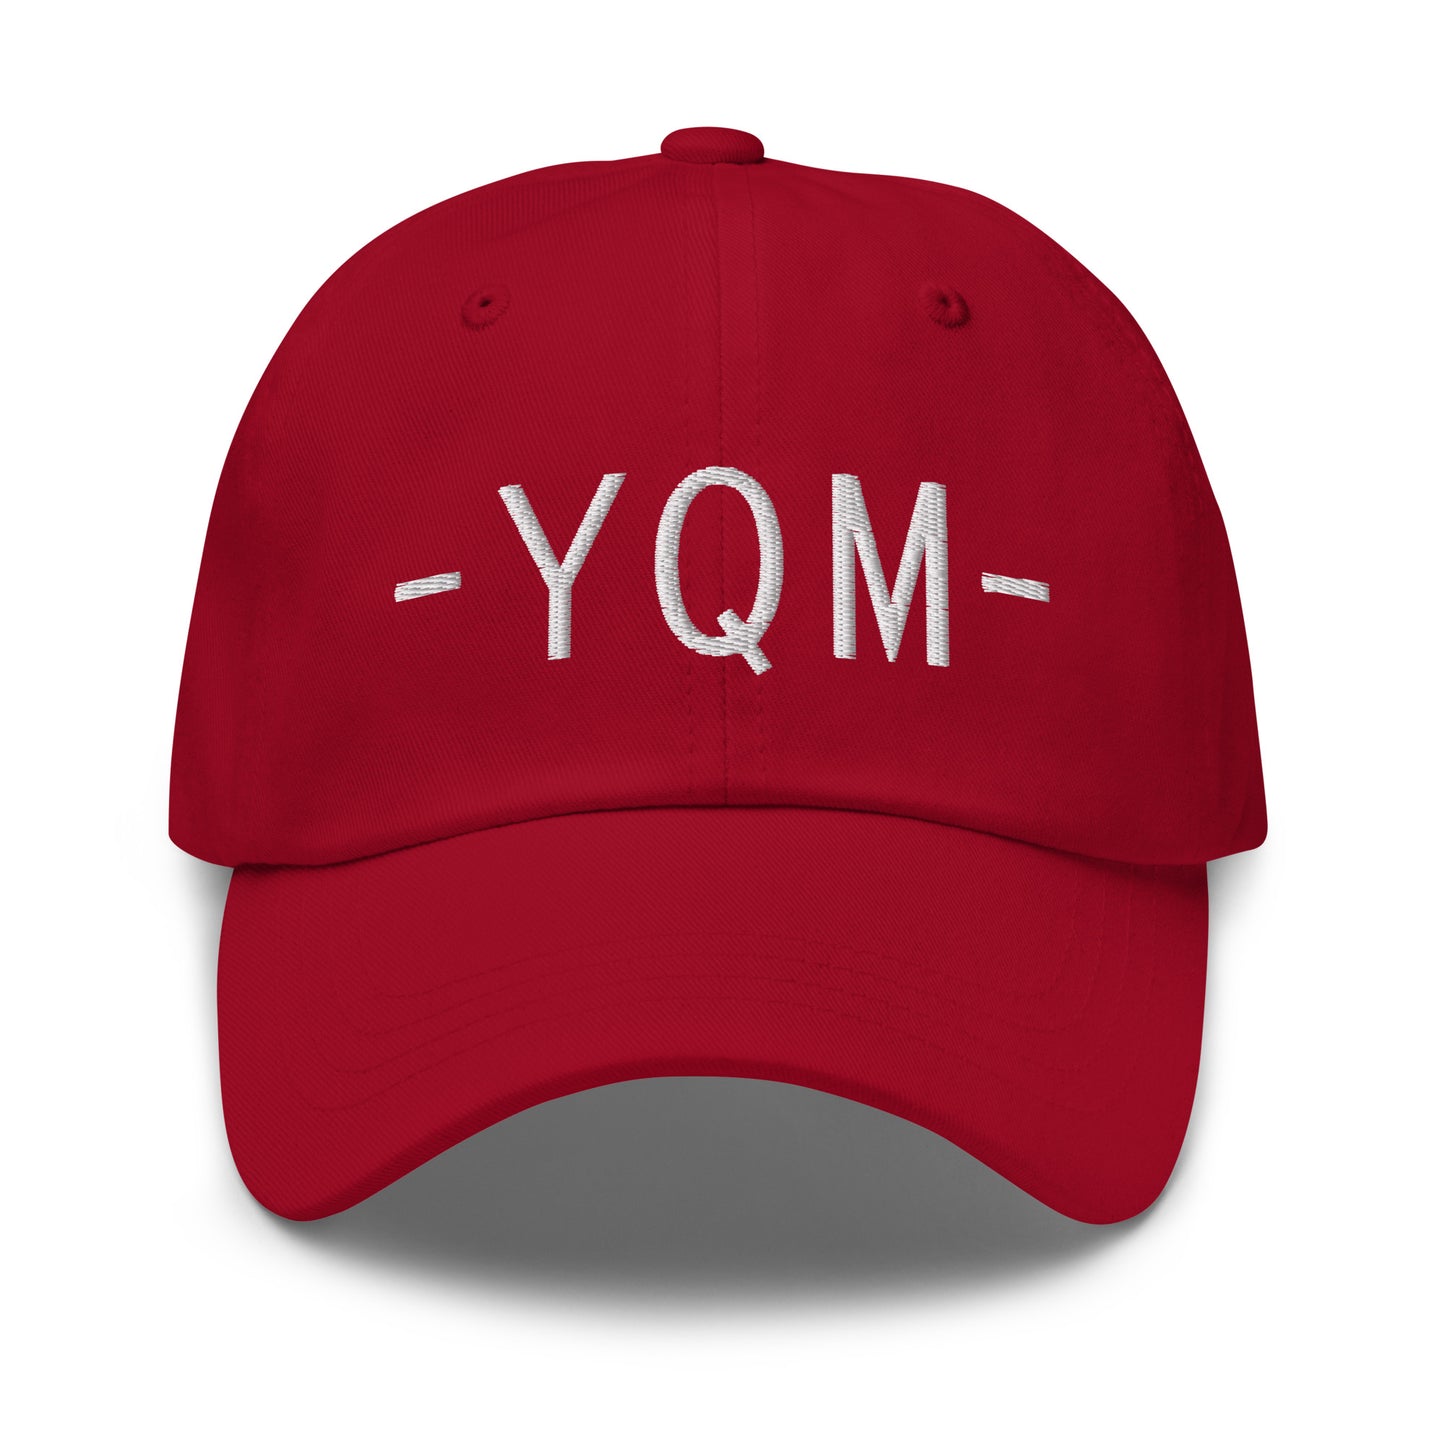 Souvenir Baseball Cap - White • YQM Moncton • YHM Designs - Image 16